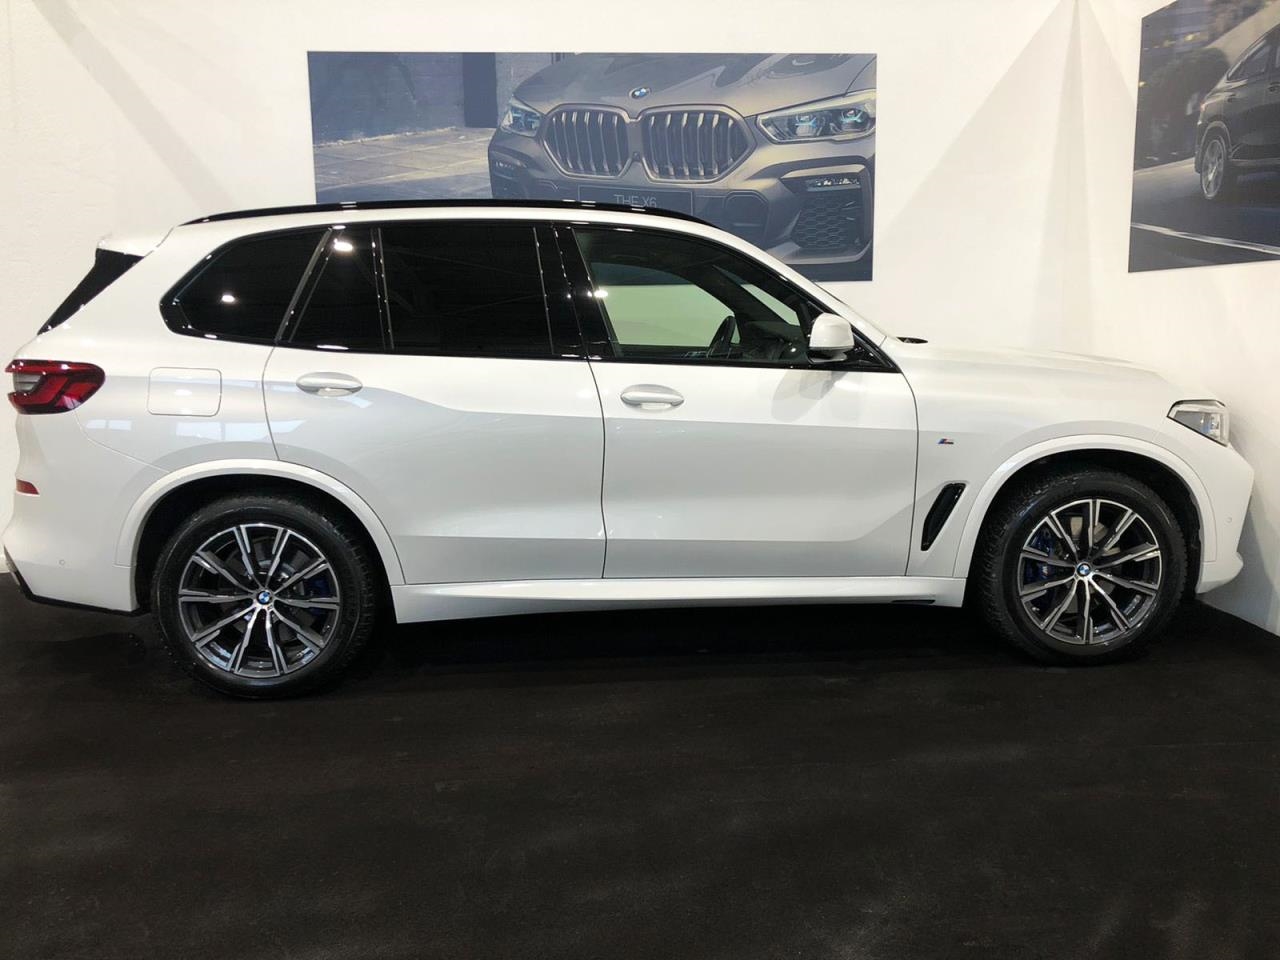 BMW X5, 2020 г.